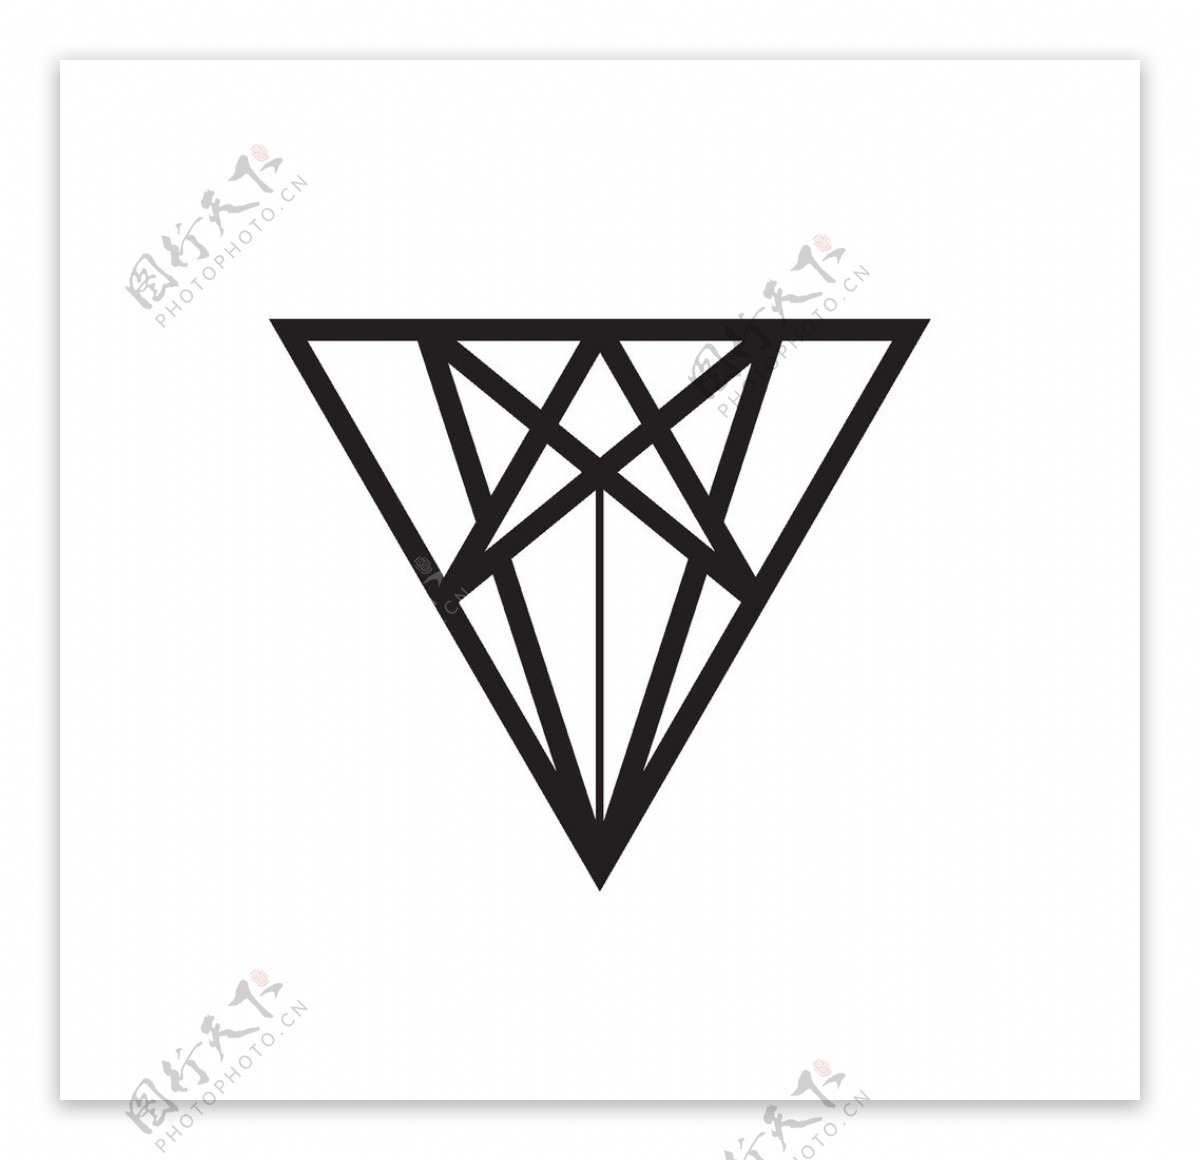 三角形标志